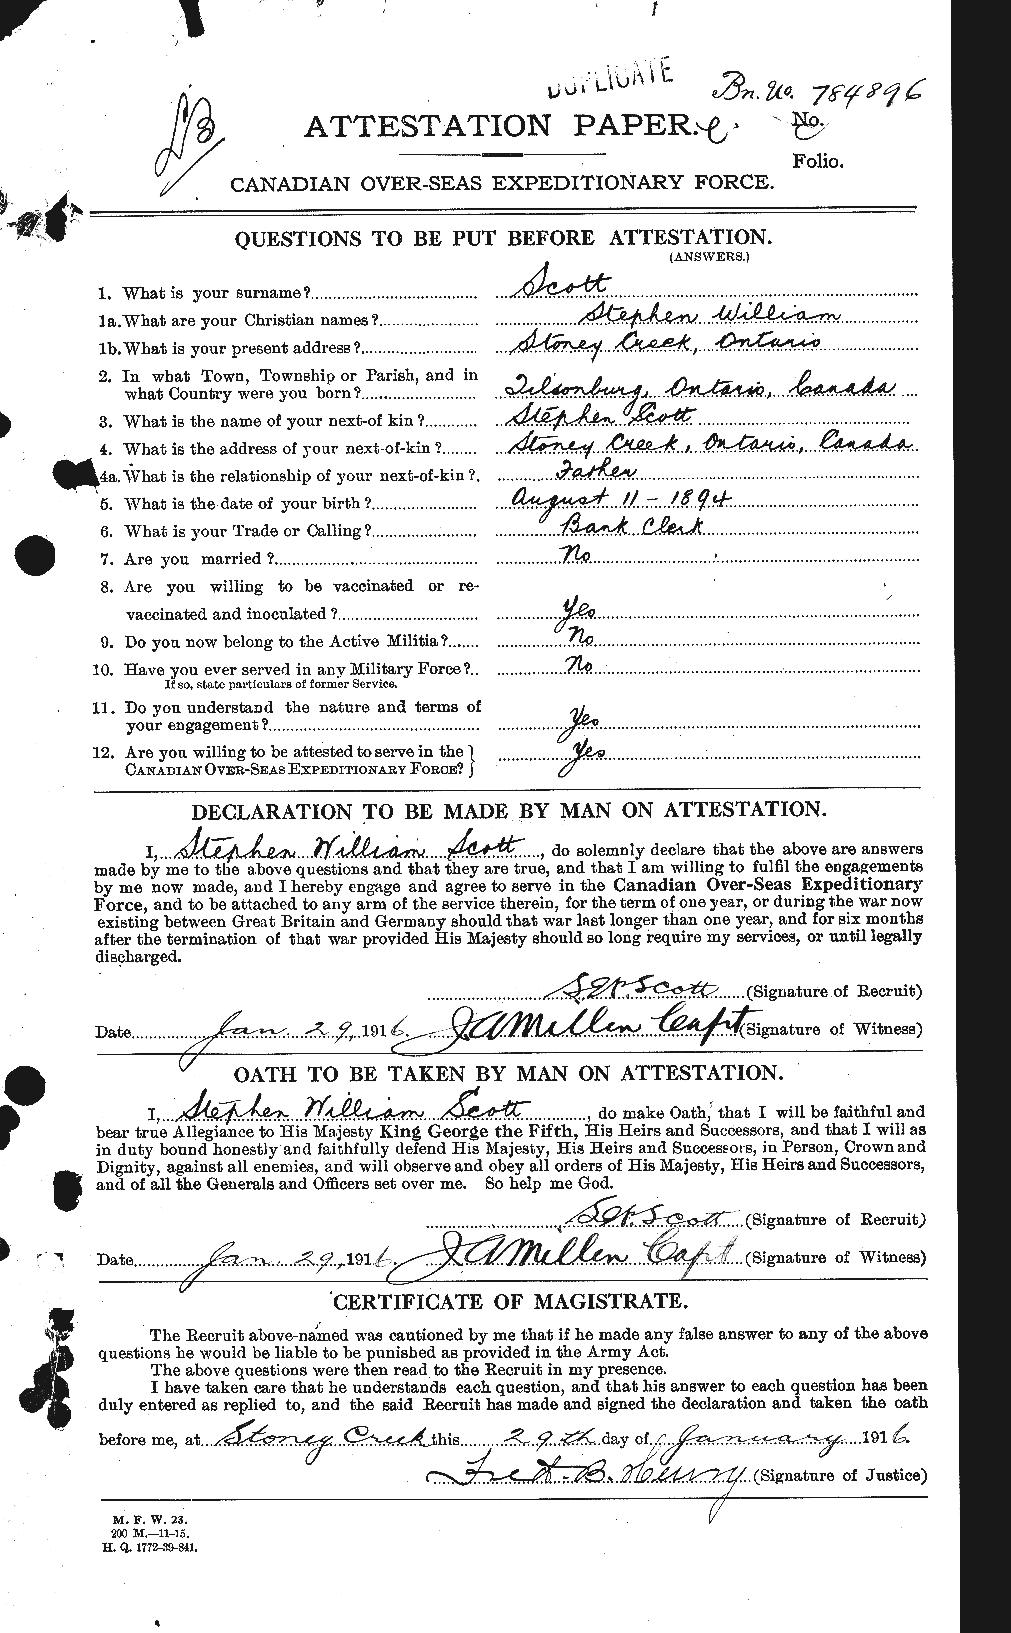 Dossiers du Personnel de la Première Guerre mondiale - CEC 088834a